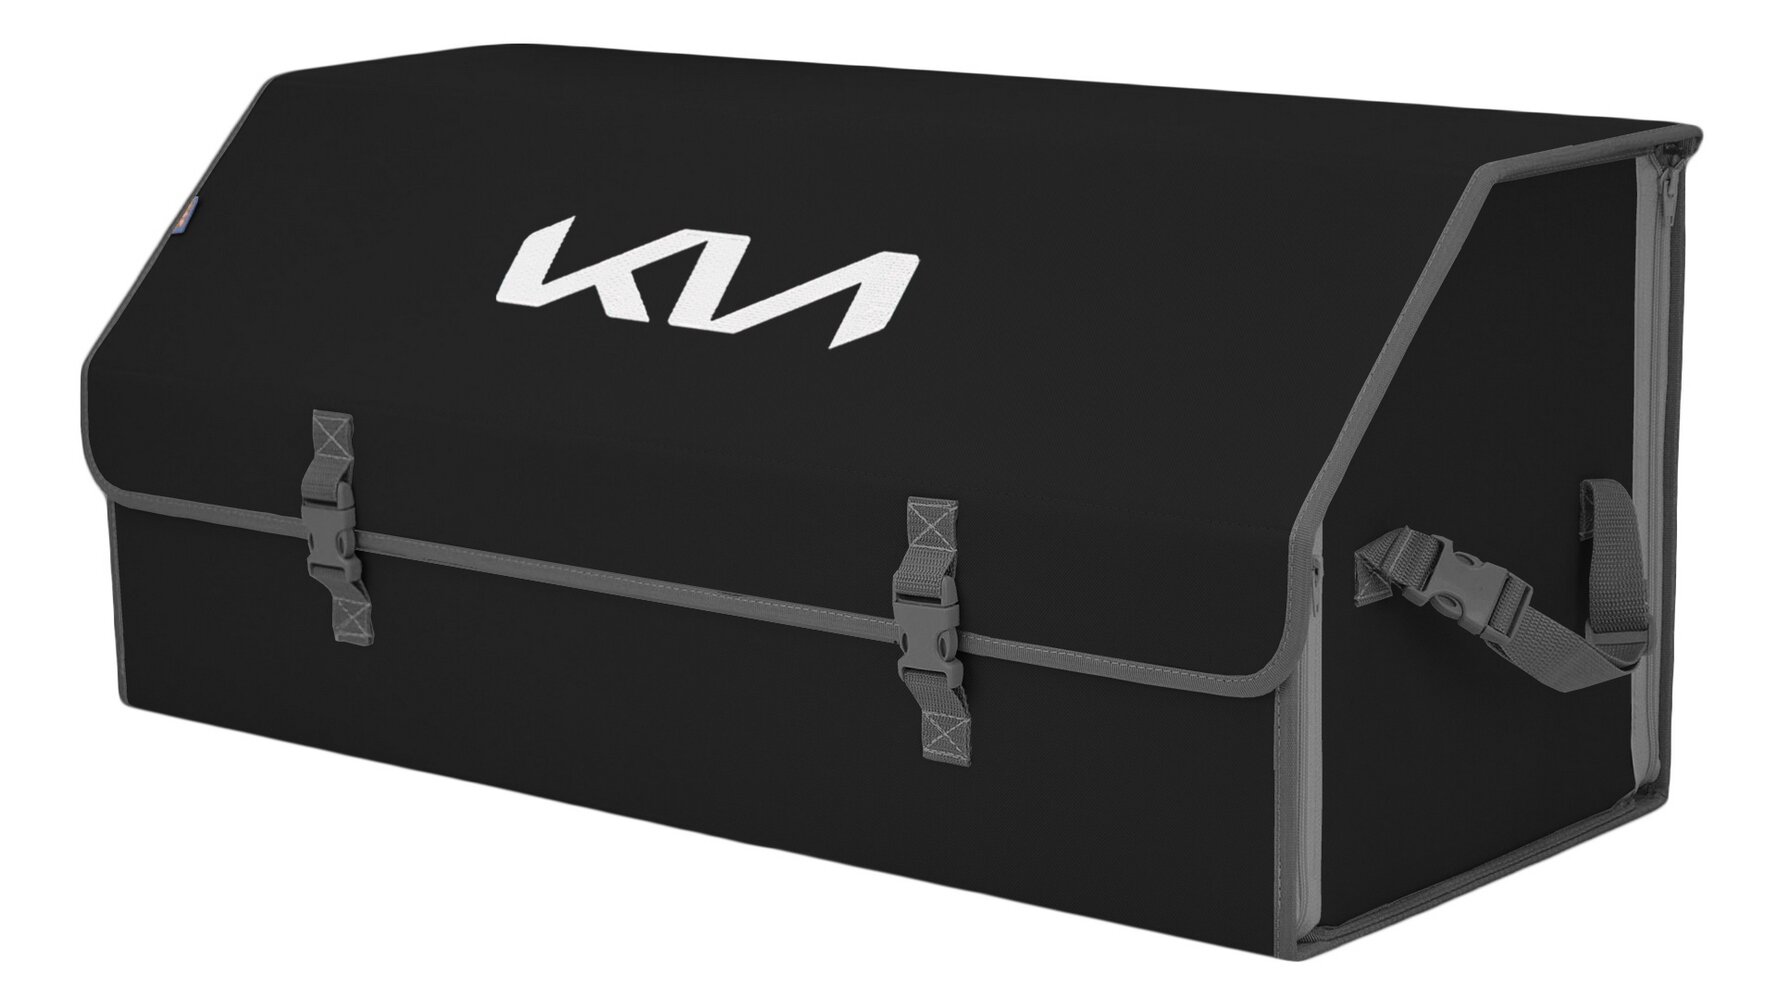 Органайзер-саквояж в багажник "Союз" (размер XXL). Цвет: черный с серой окантовкой и вышивкой KIA (КИА).